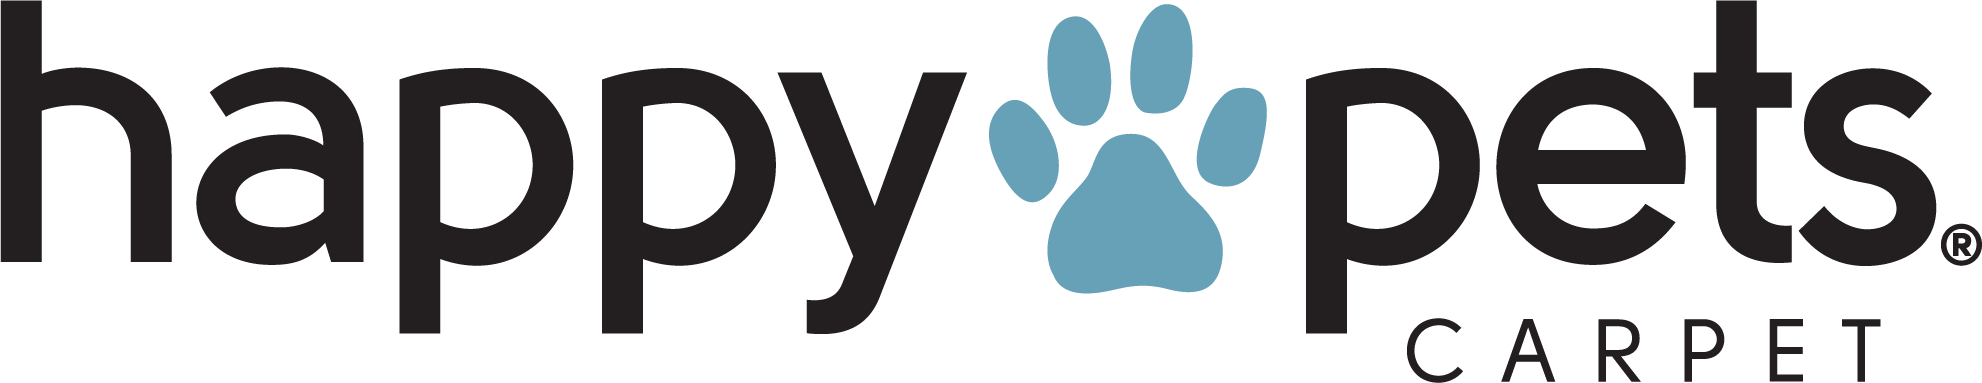 Pet Performance Happy Pets Logo | CarpetsPlus COLORTILE of Hutchinson